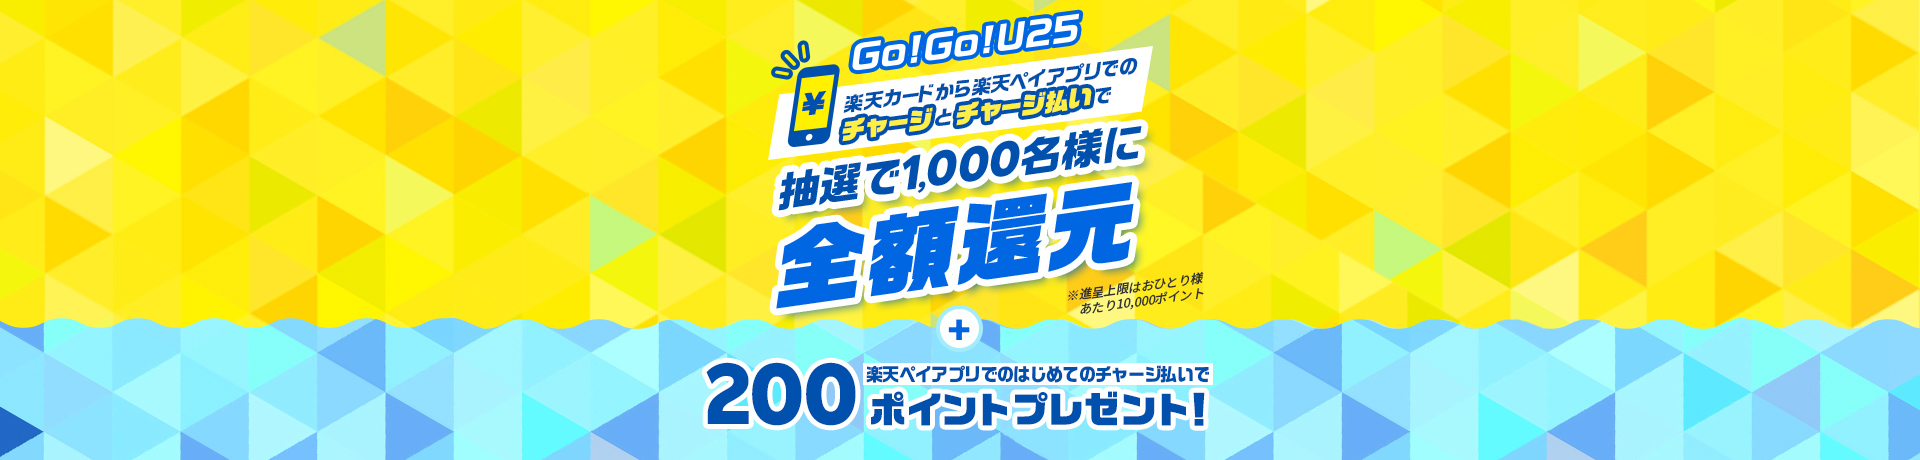 Go!Go!U25 楽天カードから楽天ペイアプリへのチャージとチャージ払いで抽選で1,000名様に全額還元